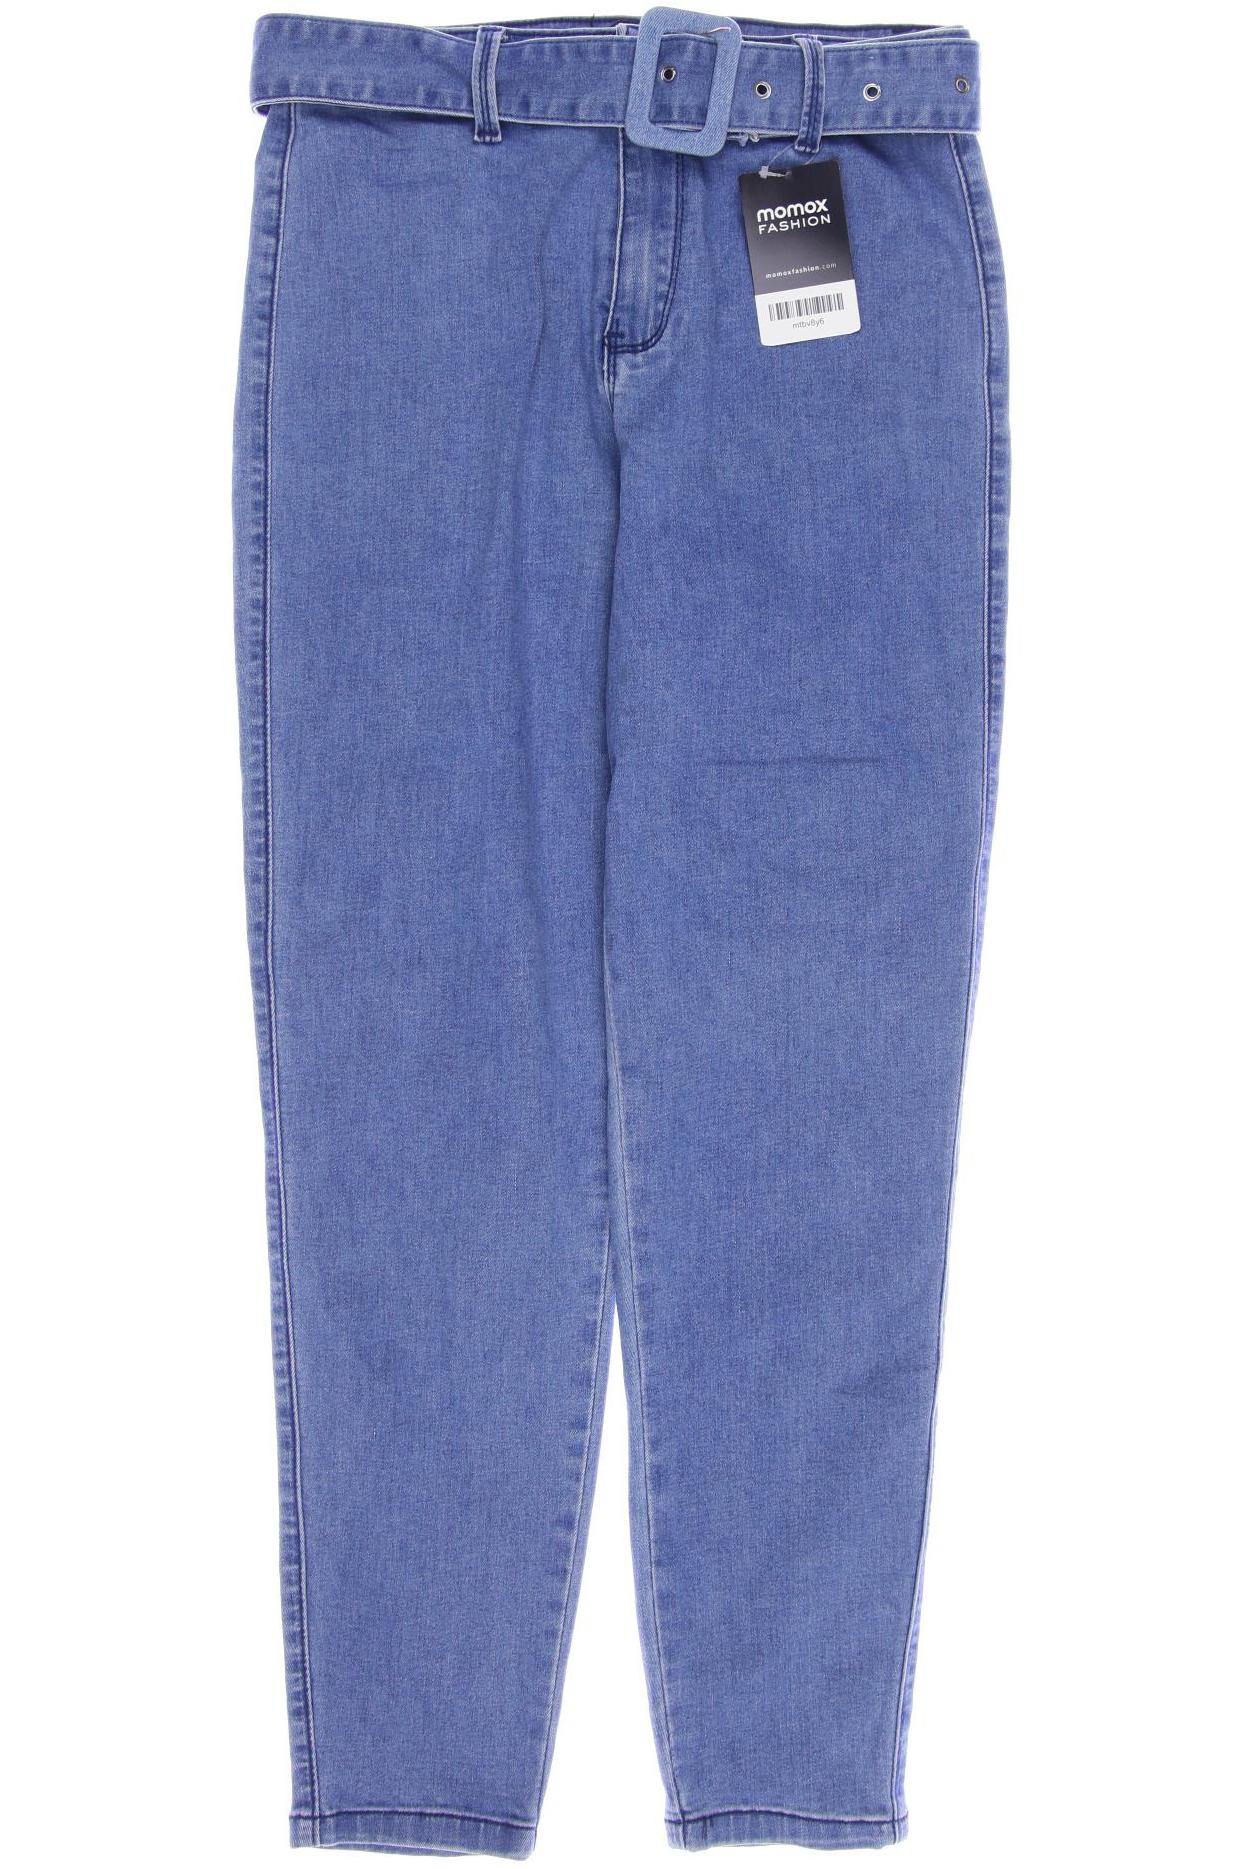 Missguided Damen Jeans, blau von Missguided